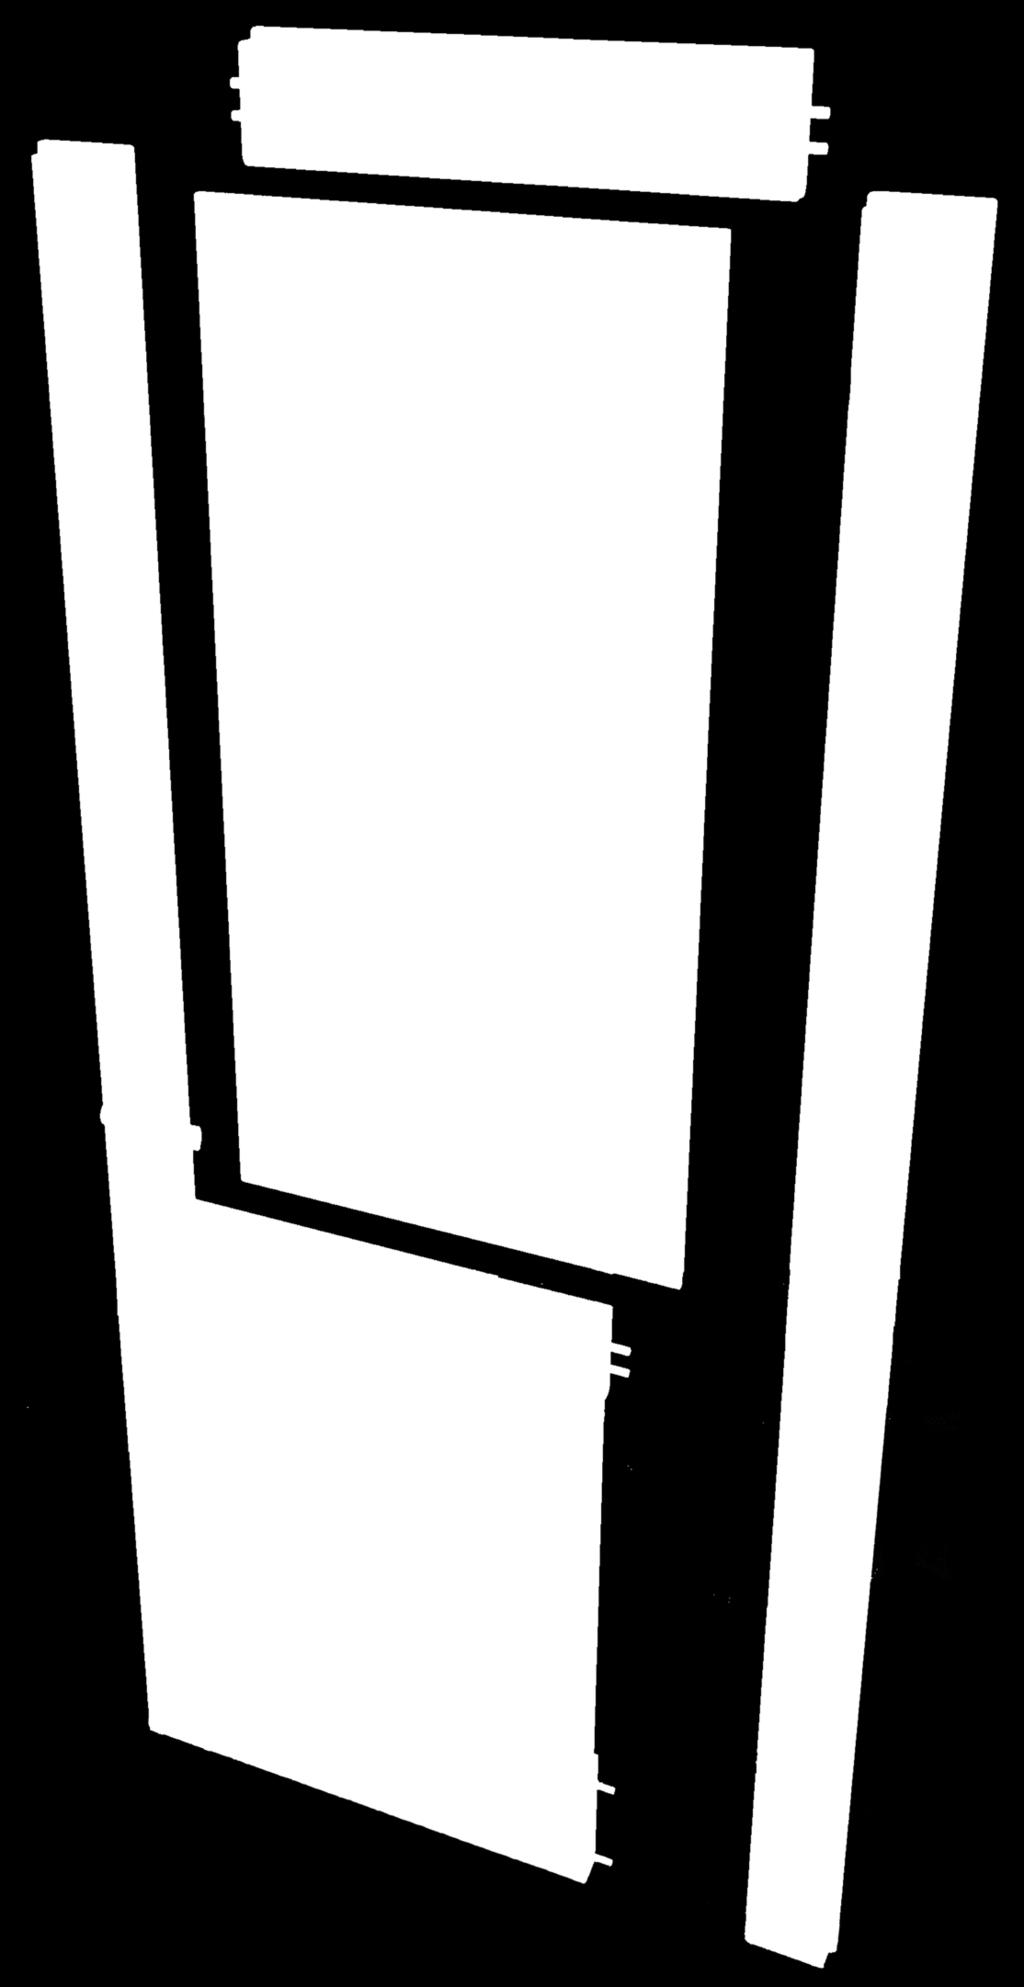 Per la costruzione dei pannelli porta assemblati elemento indispensabile è il profilo porta.